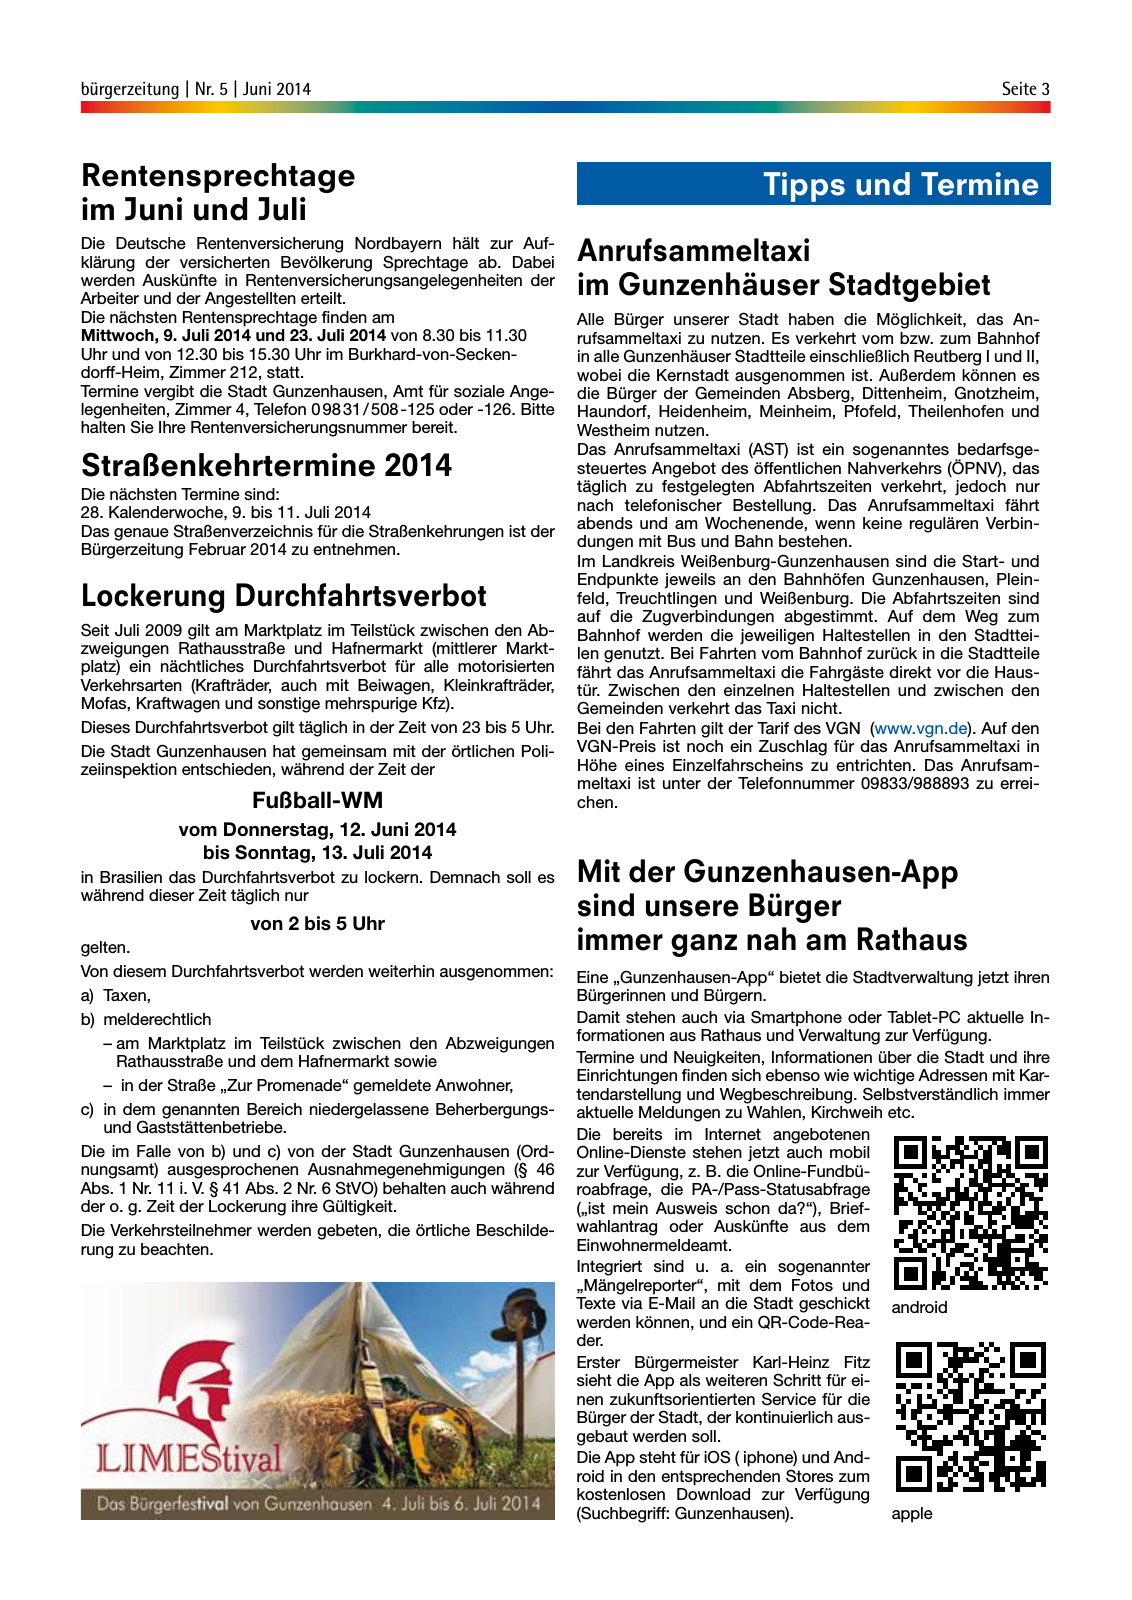 Vorschau buergerzeitung_Nr_5_Juni_2014 Seite 3